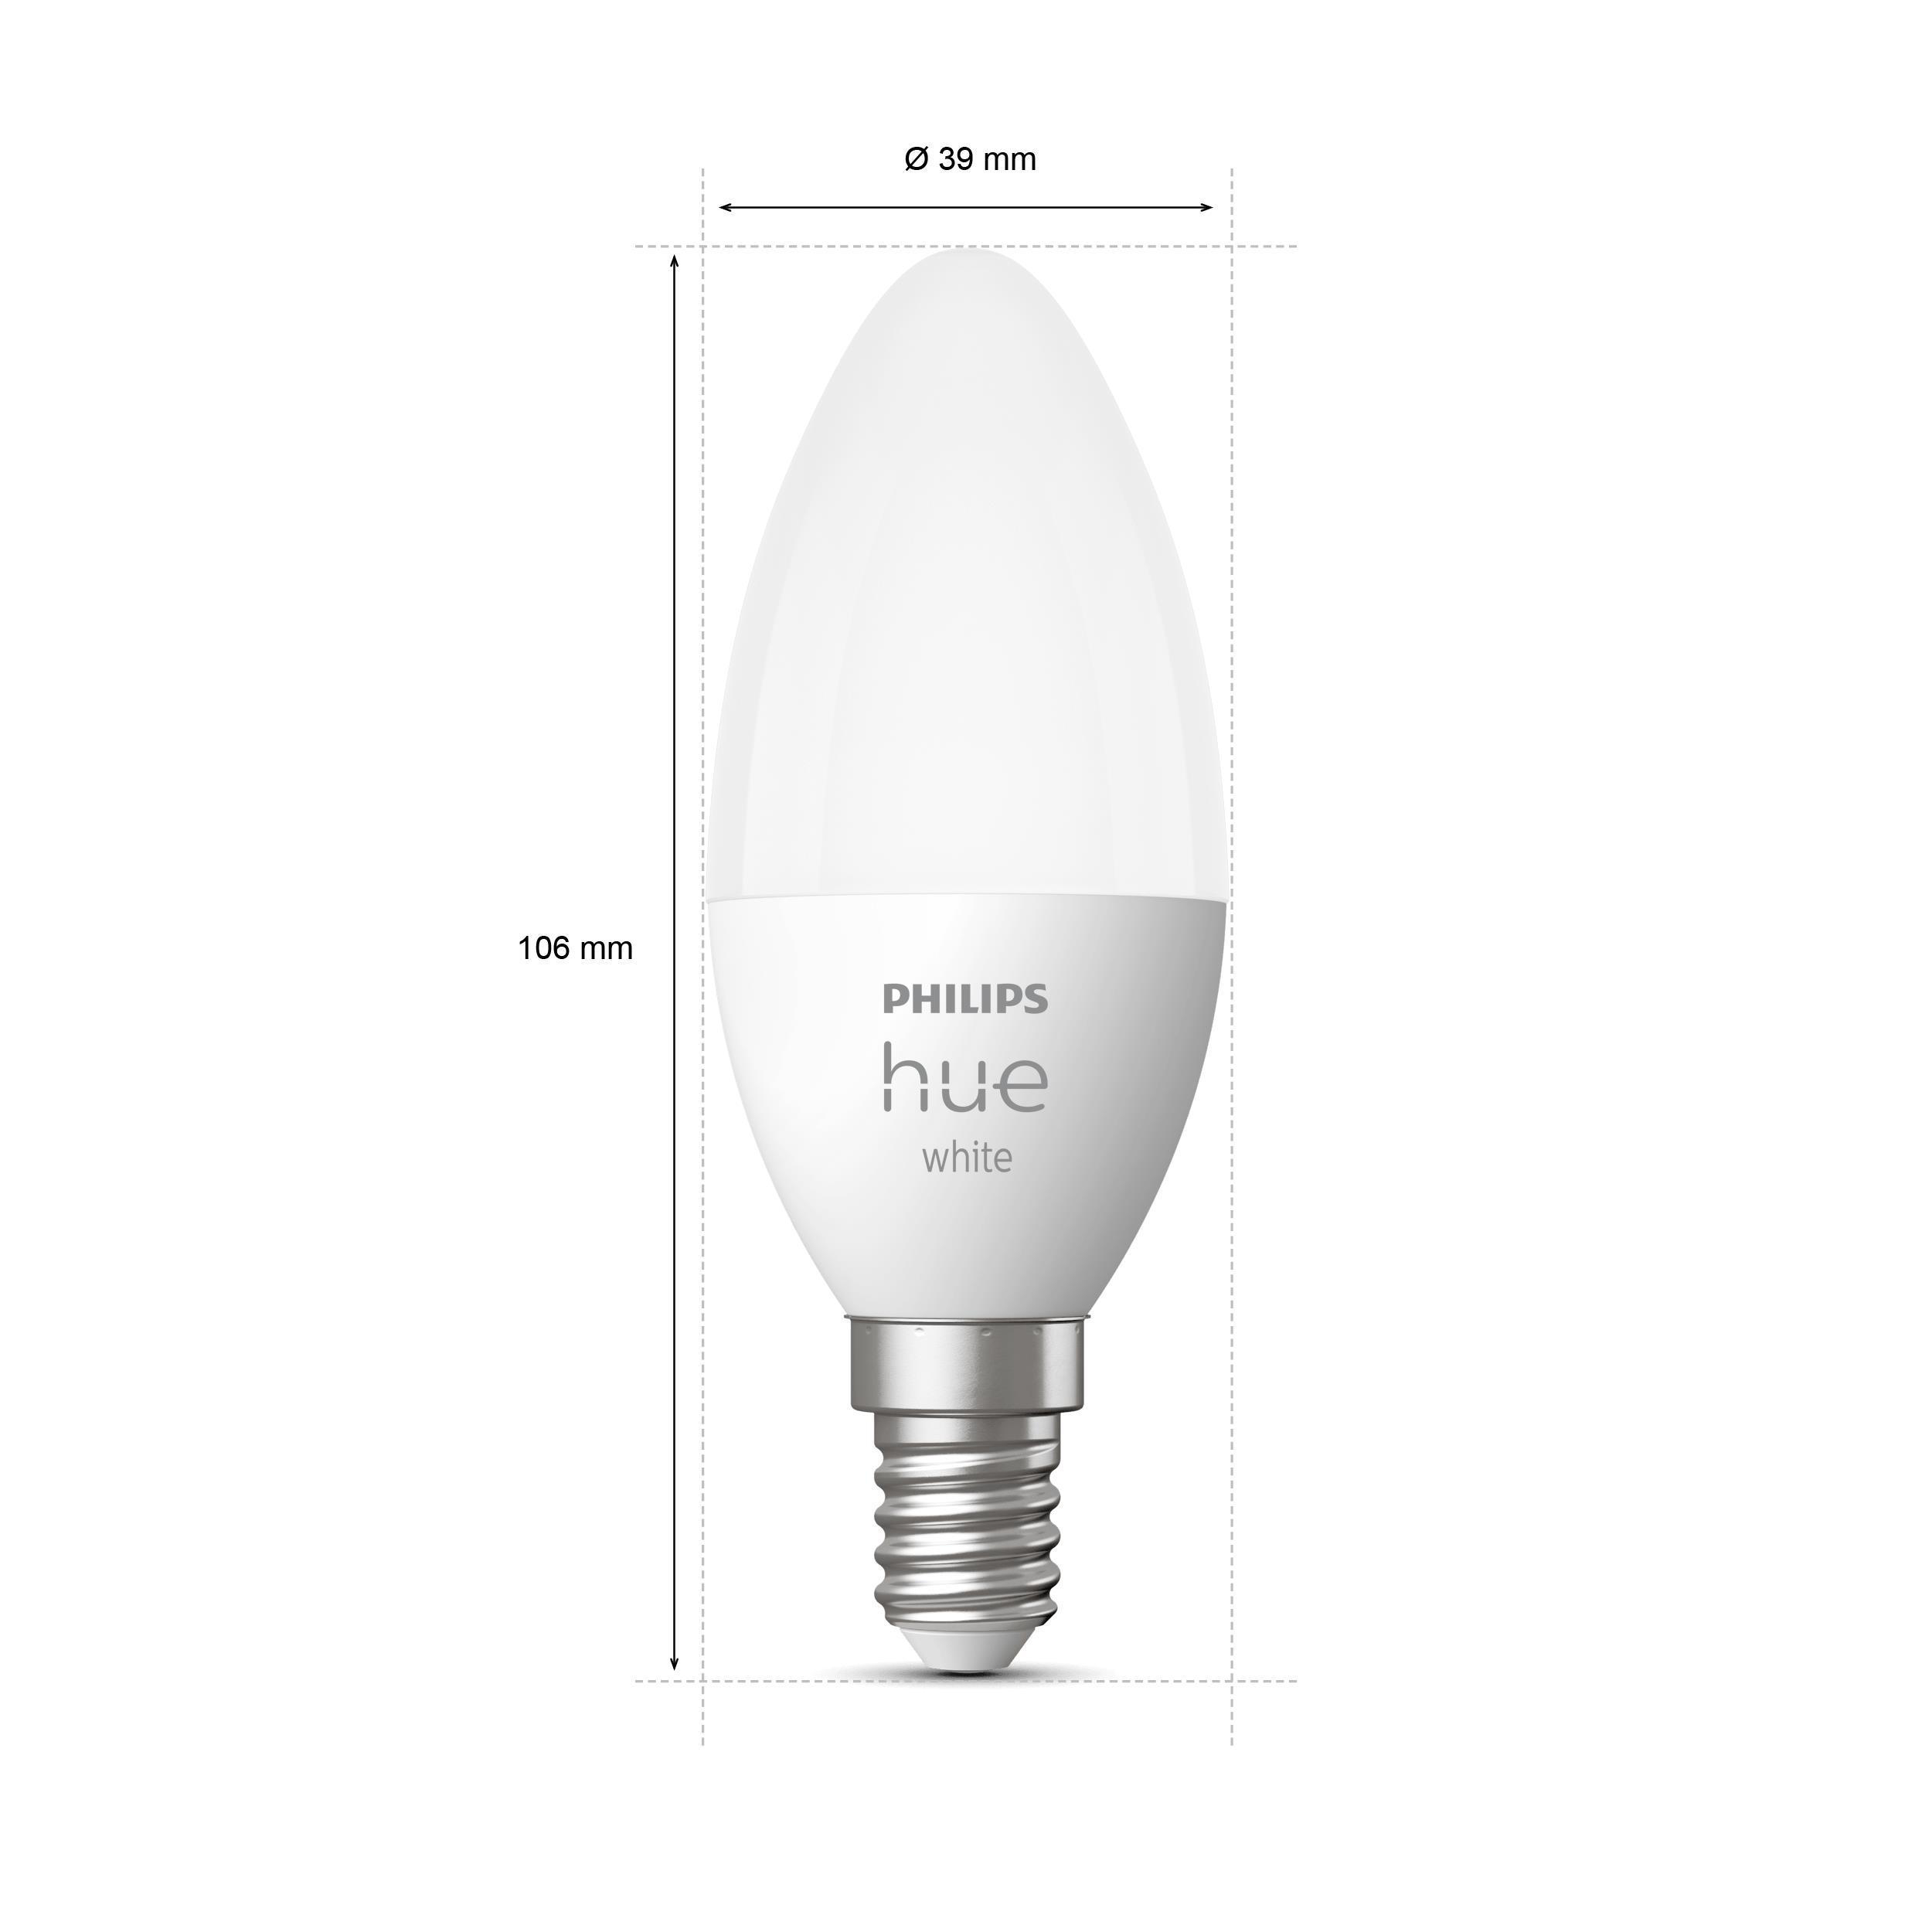 PHILIPS Hue White E14 Lampe Einzelpack Warmweiß LED